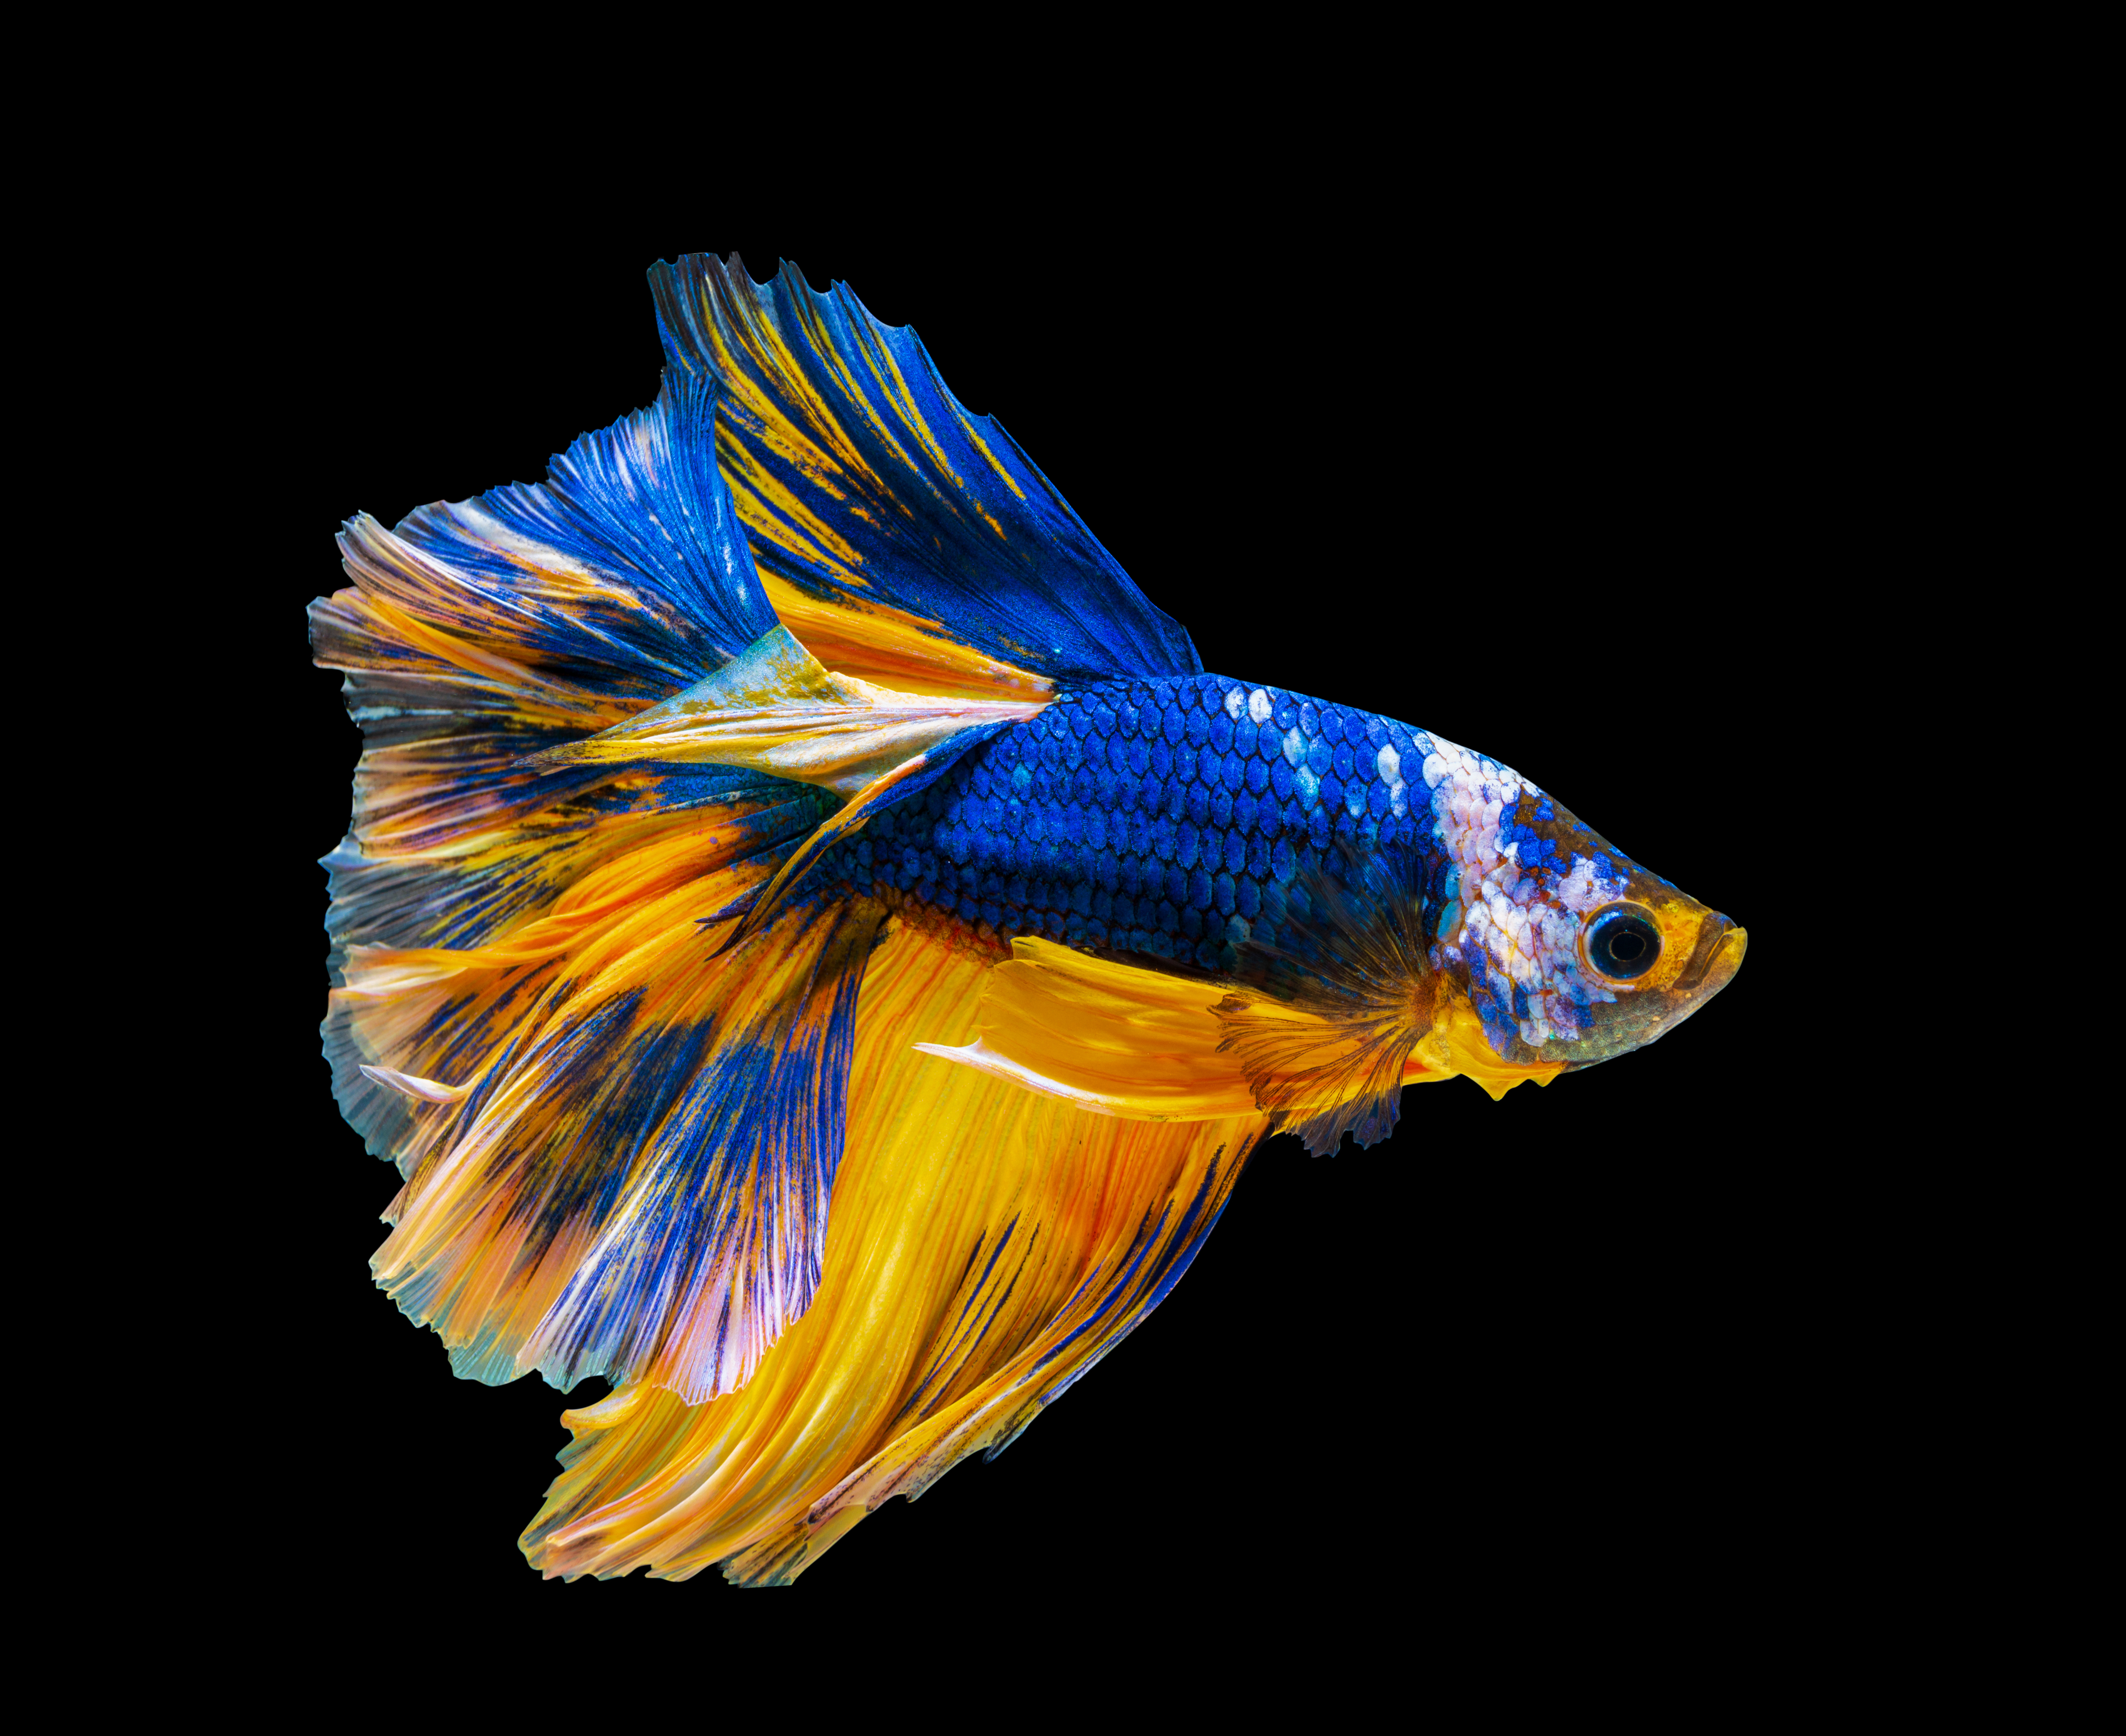 Blue Fish Images  Free Download on Freepik